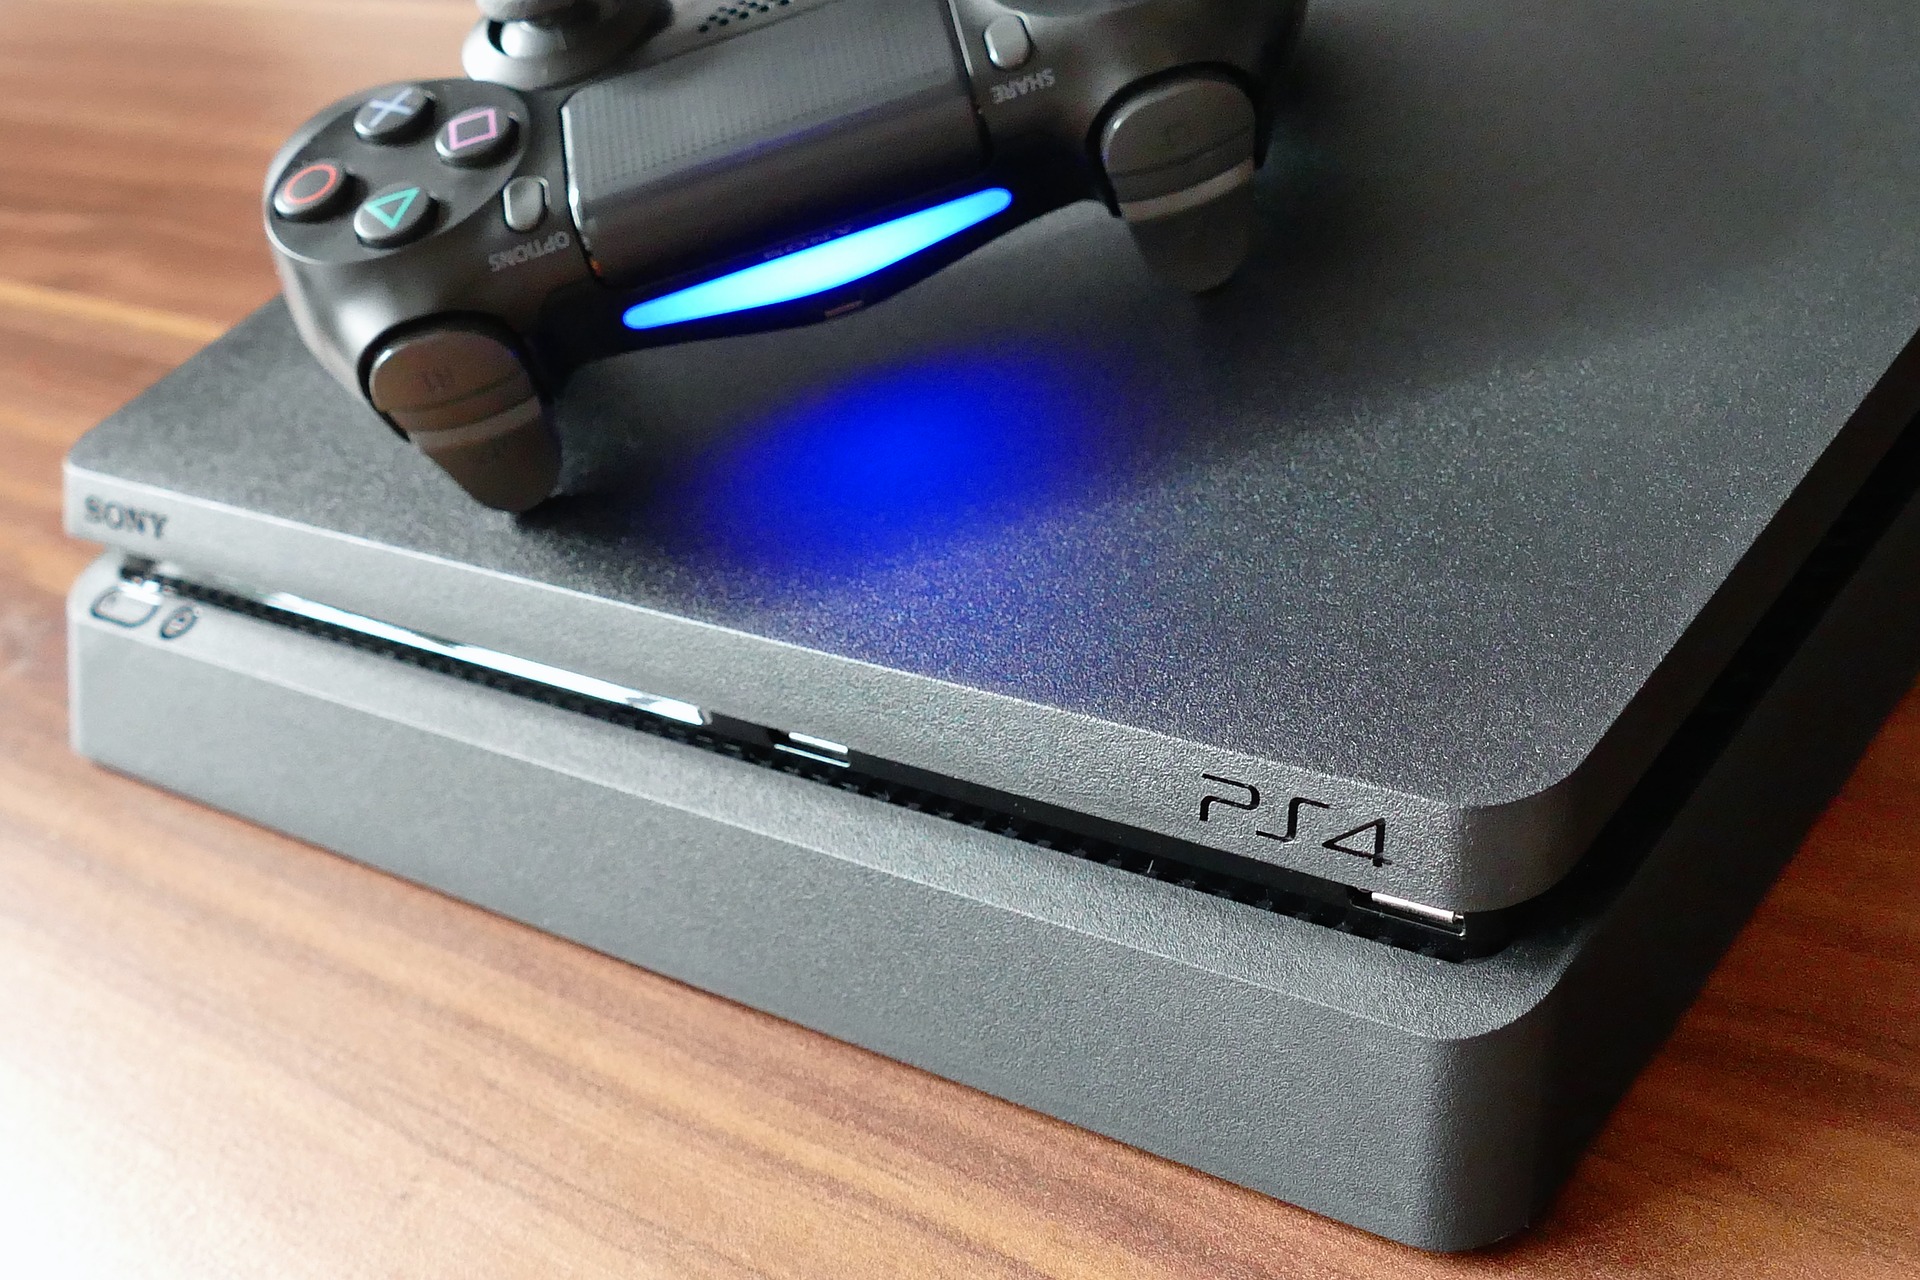  Sony a écoulé plus de 60,4 millions de PS4 dans le monde